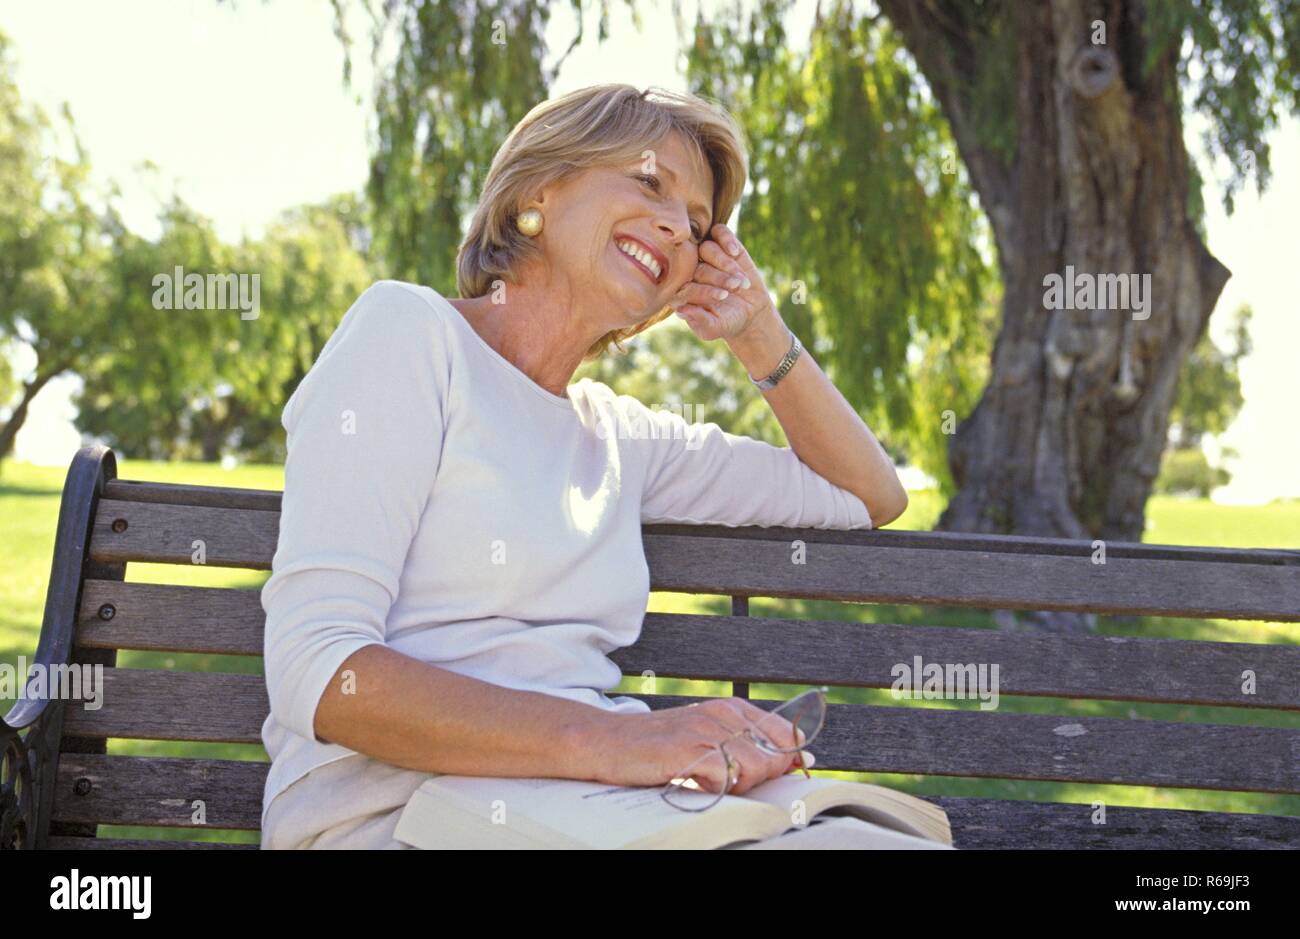 Portrait, Parkszene, blonde Frau, Mitte 50, bekleidet mit heller Hose und Top, sitzt entspannt mit einem Buch und ihrer Lesebrille in der Hand auf einer Parkbank unter einem Baum Stock Photo